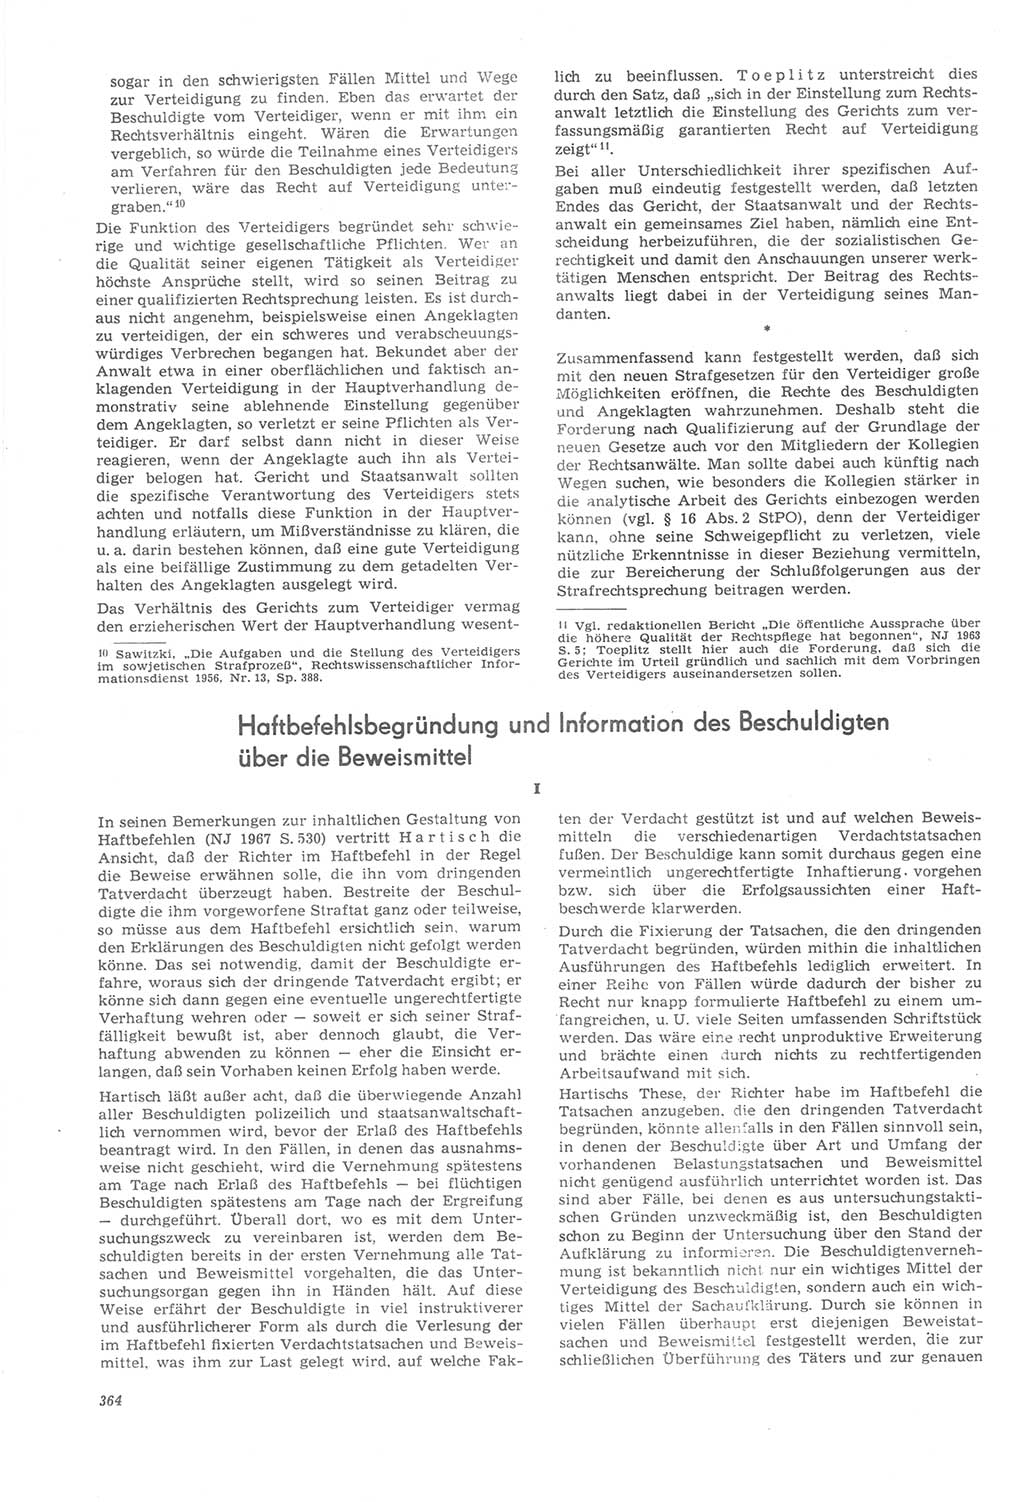 Neue Justiz (NJ), Zeitschrift für Recht und Rechtswissenschaft [Deutsche Demokratische Republik (DDR)], 22. Jahrgang 1968, Seite 364 (NJ DDR 1968, S. 364)